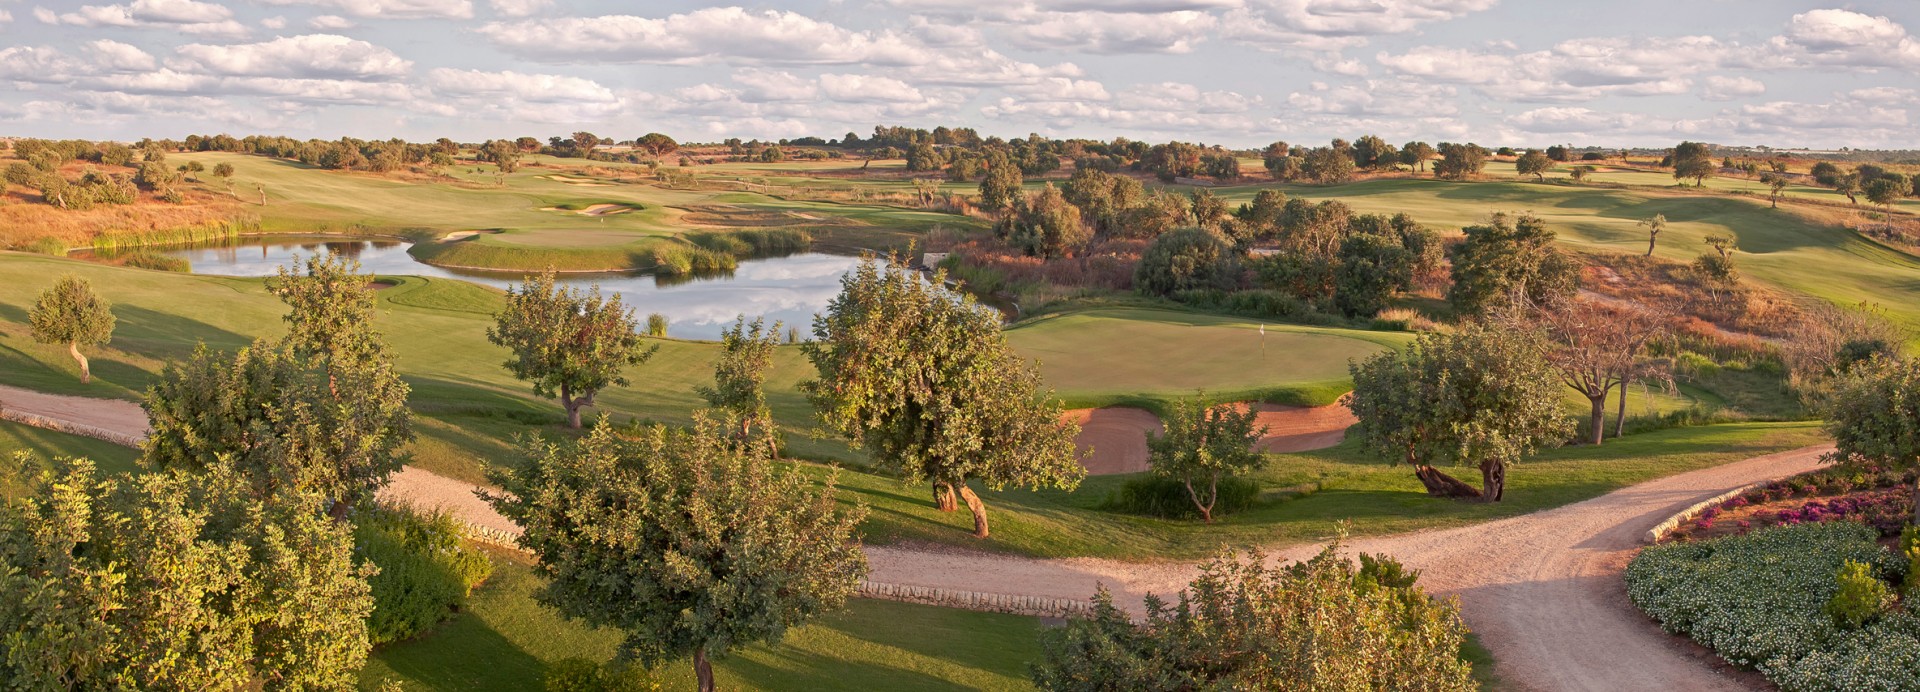 Donnafugata Golf Course - Parkland Course  | Golfové zájezdy, golfová dovolená, luxusní golf